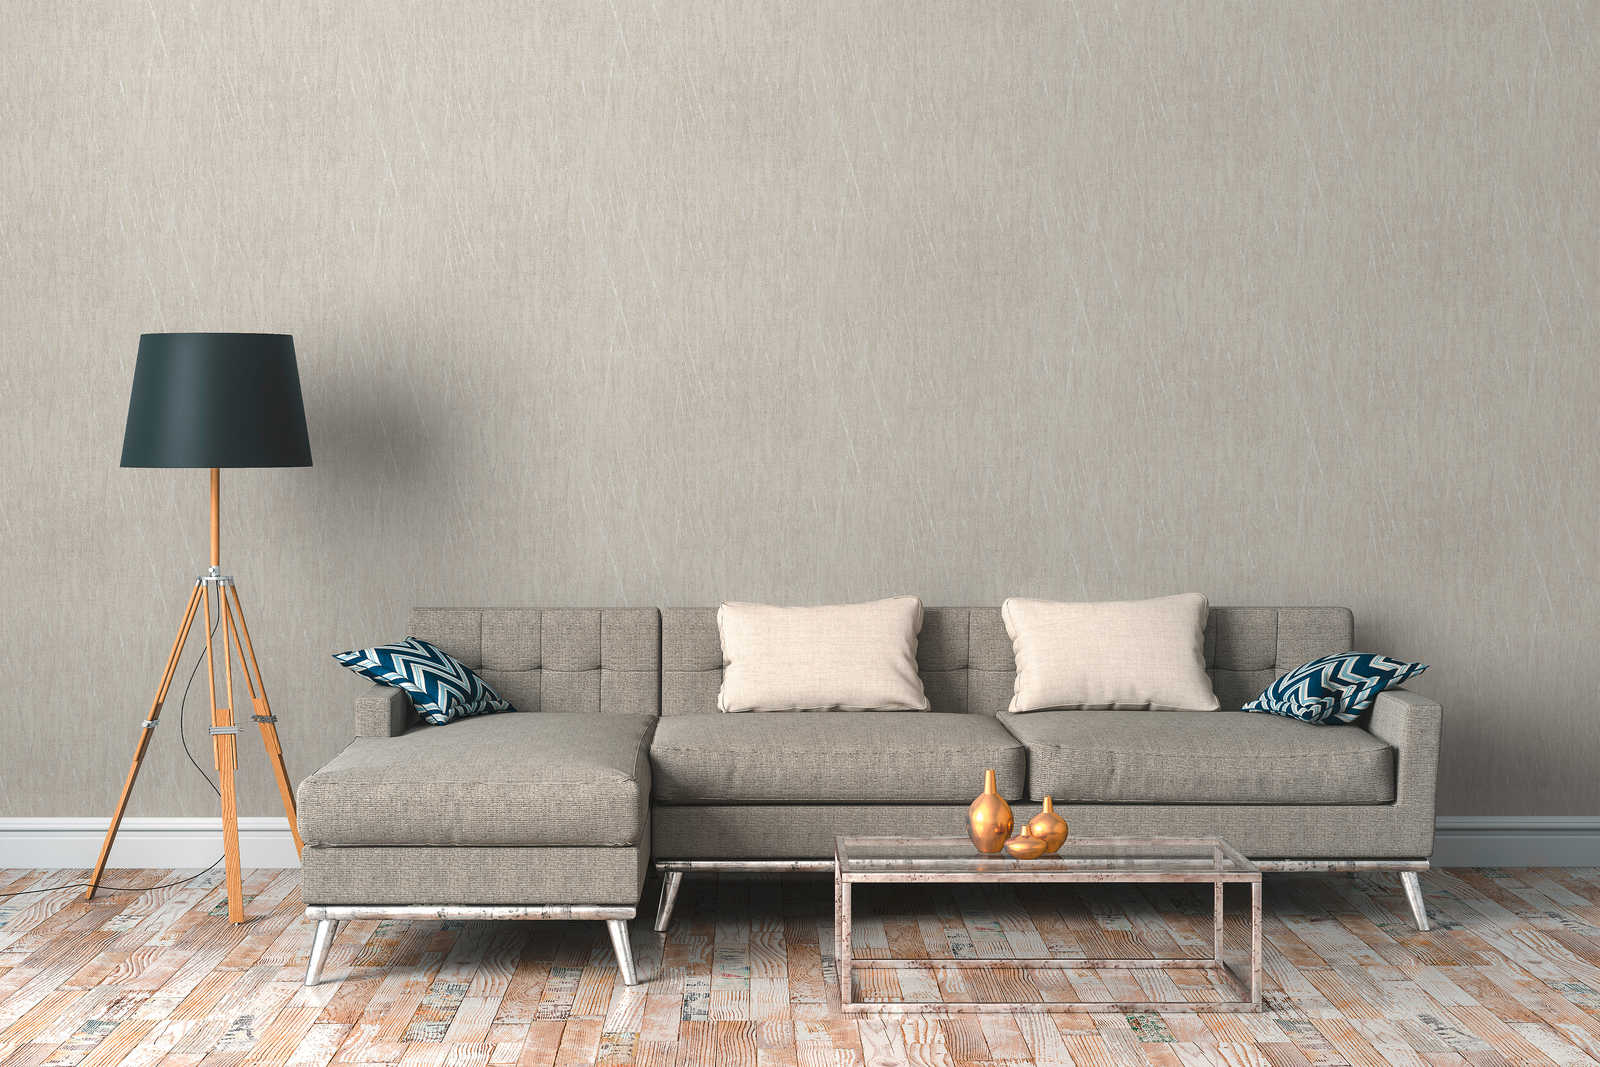             Scandinavian wallpaper with metallic design - grey, metallic
        